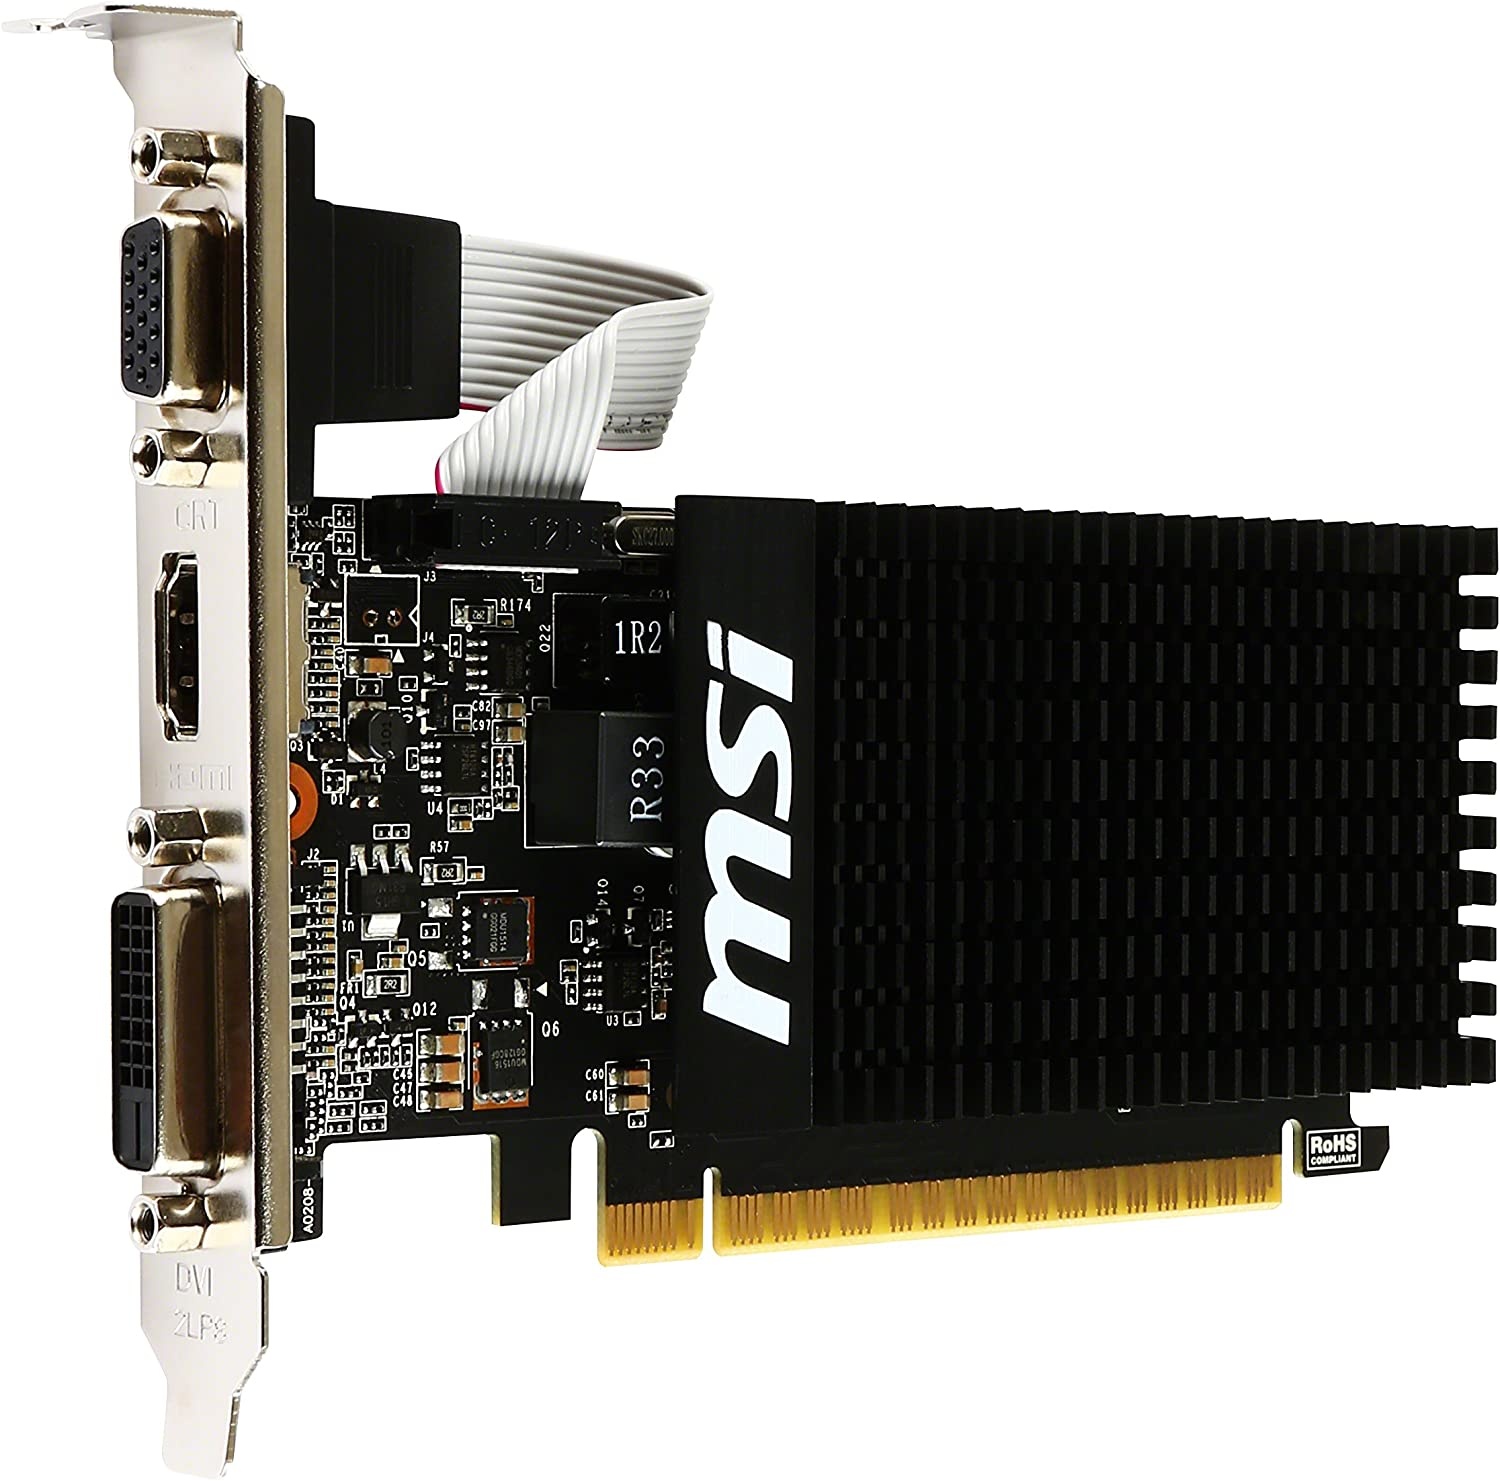 MSI GeForce GT 710 1GD3H LPV1 